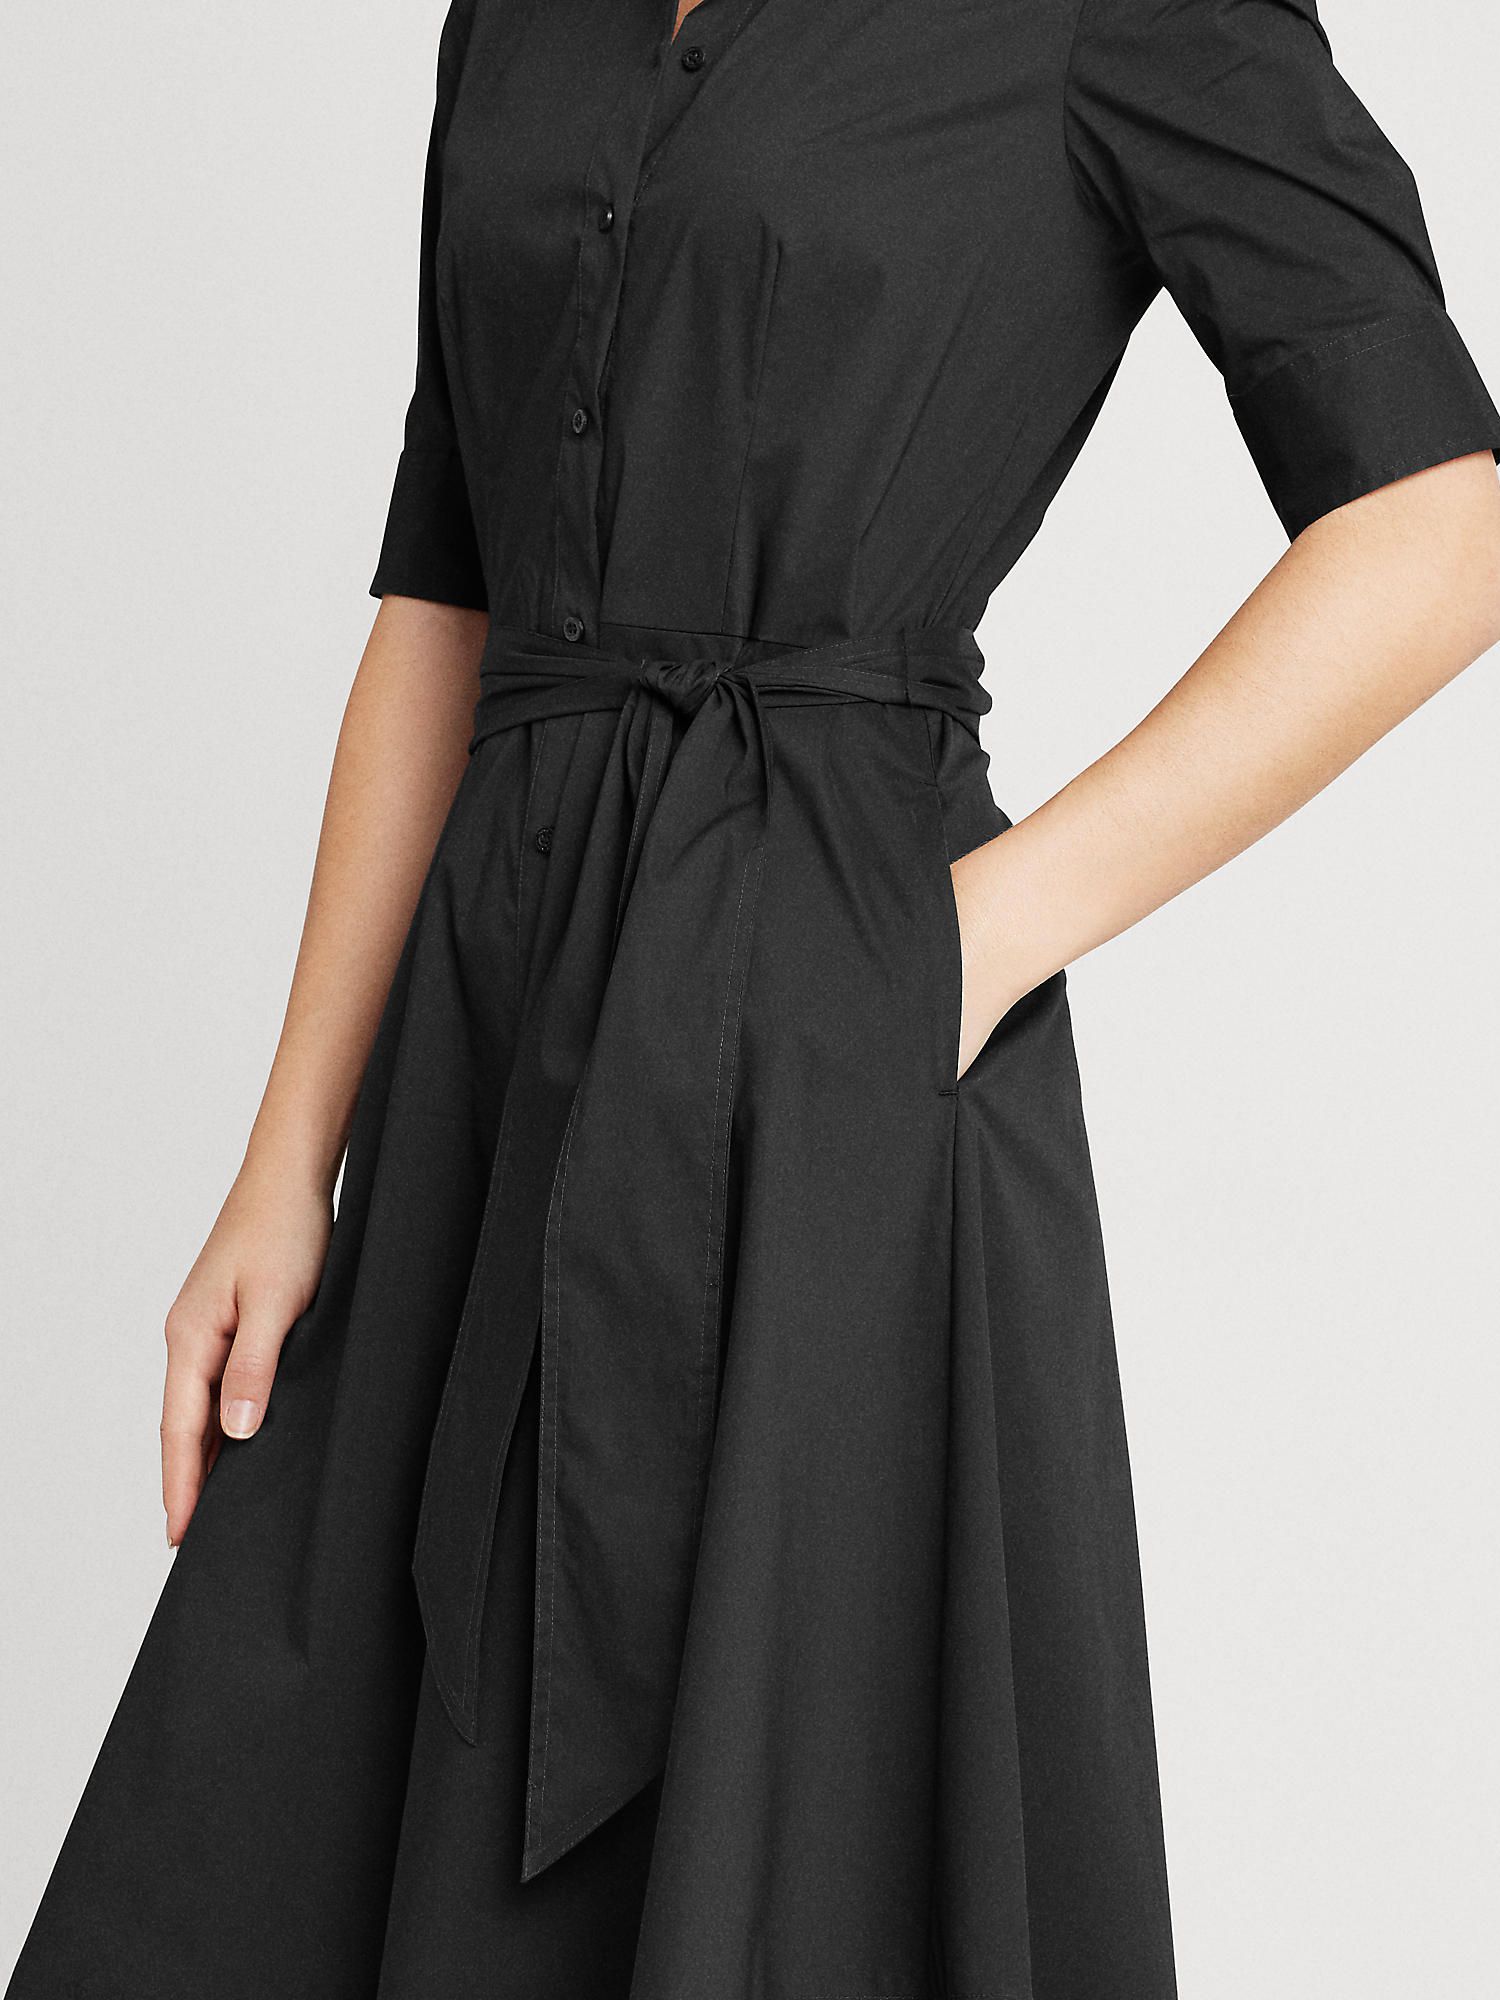 Lauren Ralph Lauren Finnbarr Short Sleeve Shirt Dress, Polo Black, 8